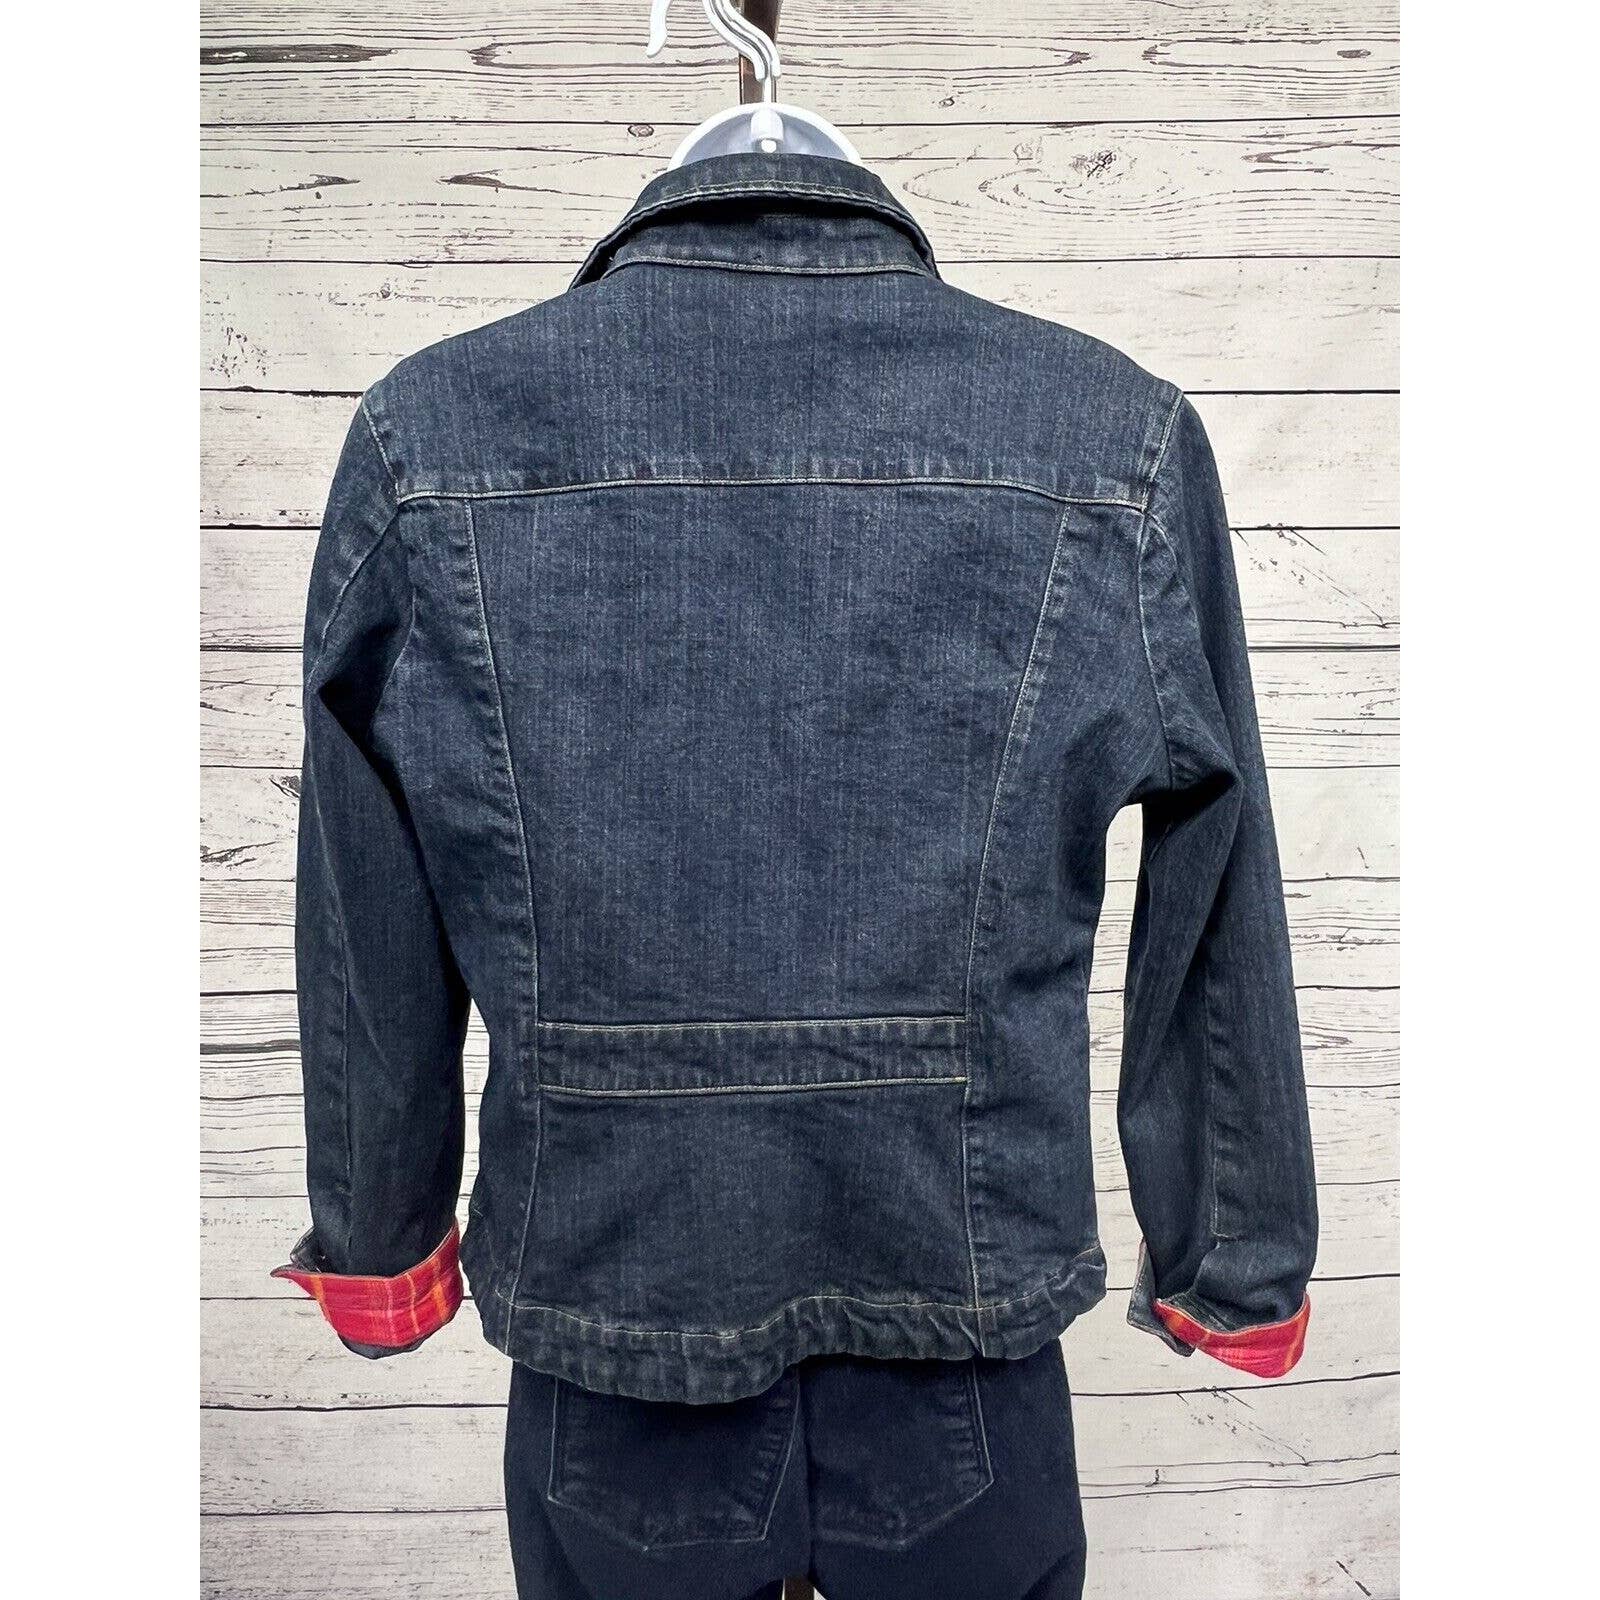 Eddie Bauer Denim Jeans Jacket Women’s Medium Trucker Style Flannel Lined